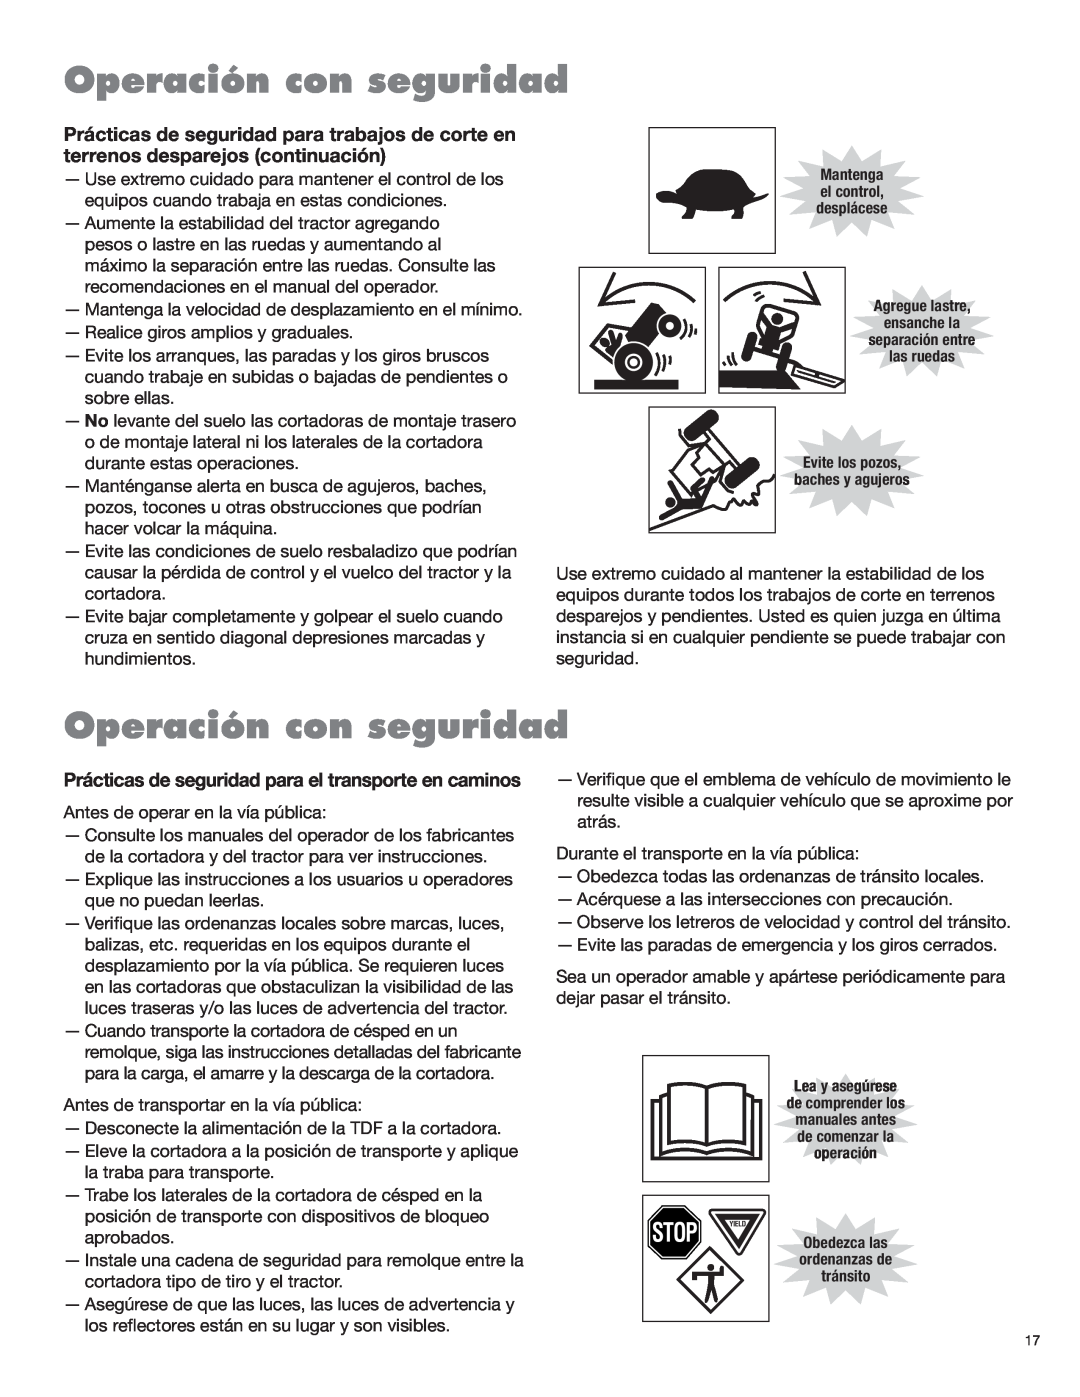 Blue Rhino FC-0025, FC-0024 manual Stop, Operación con seguridad 